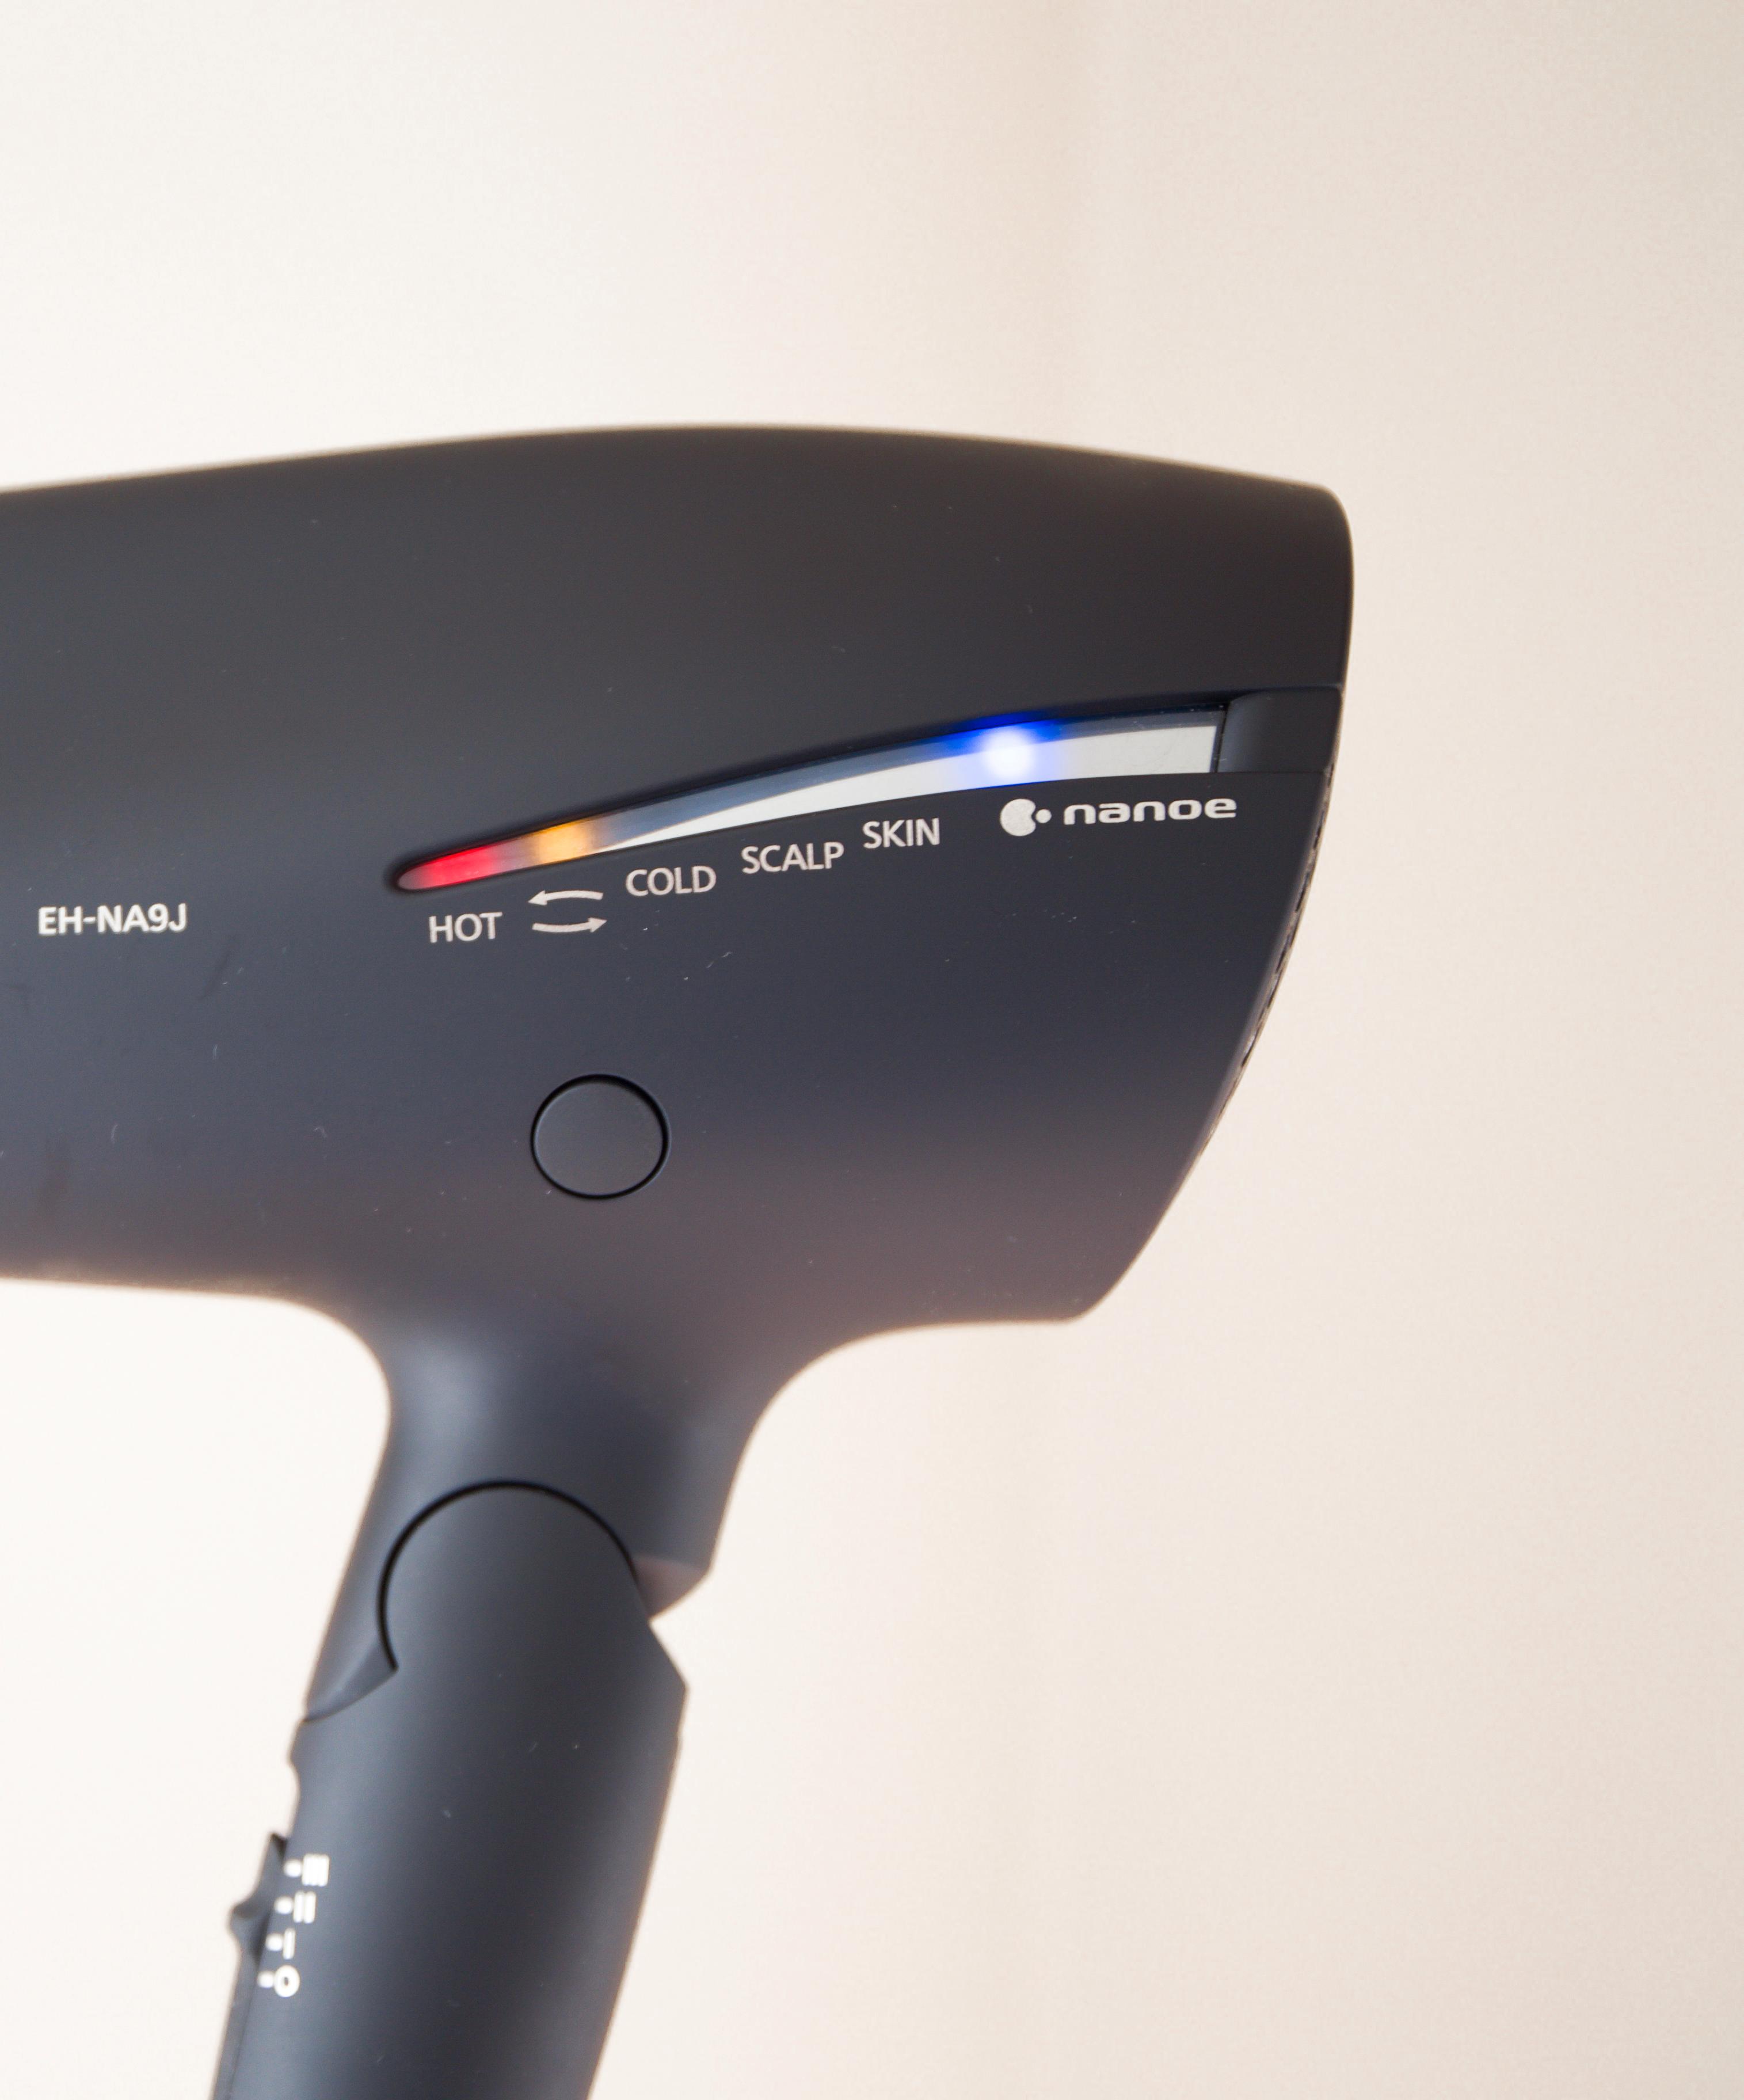 Med flere funksjoner utover å tørke håret, skiller Panasonic seg ut. Dette panelet viser hvilken funksjon som er i effekt. 